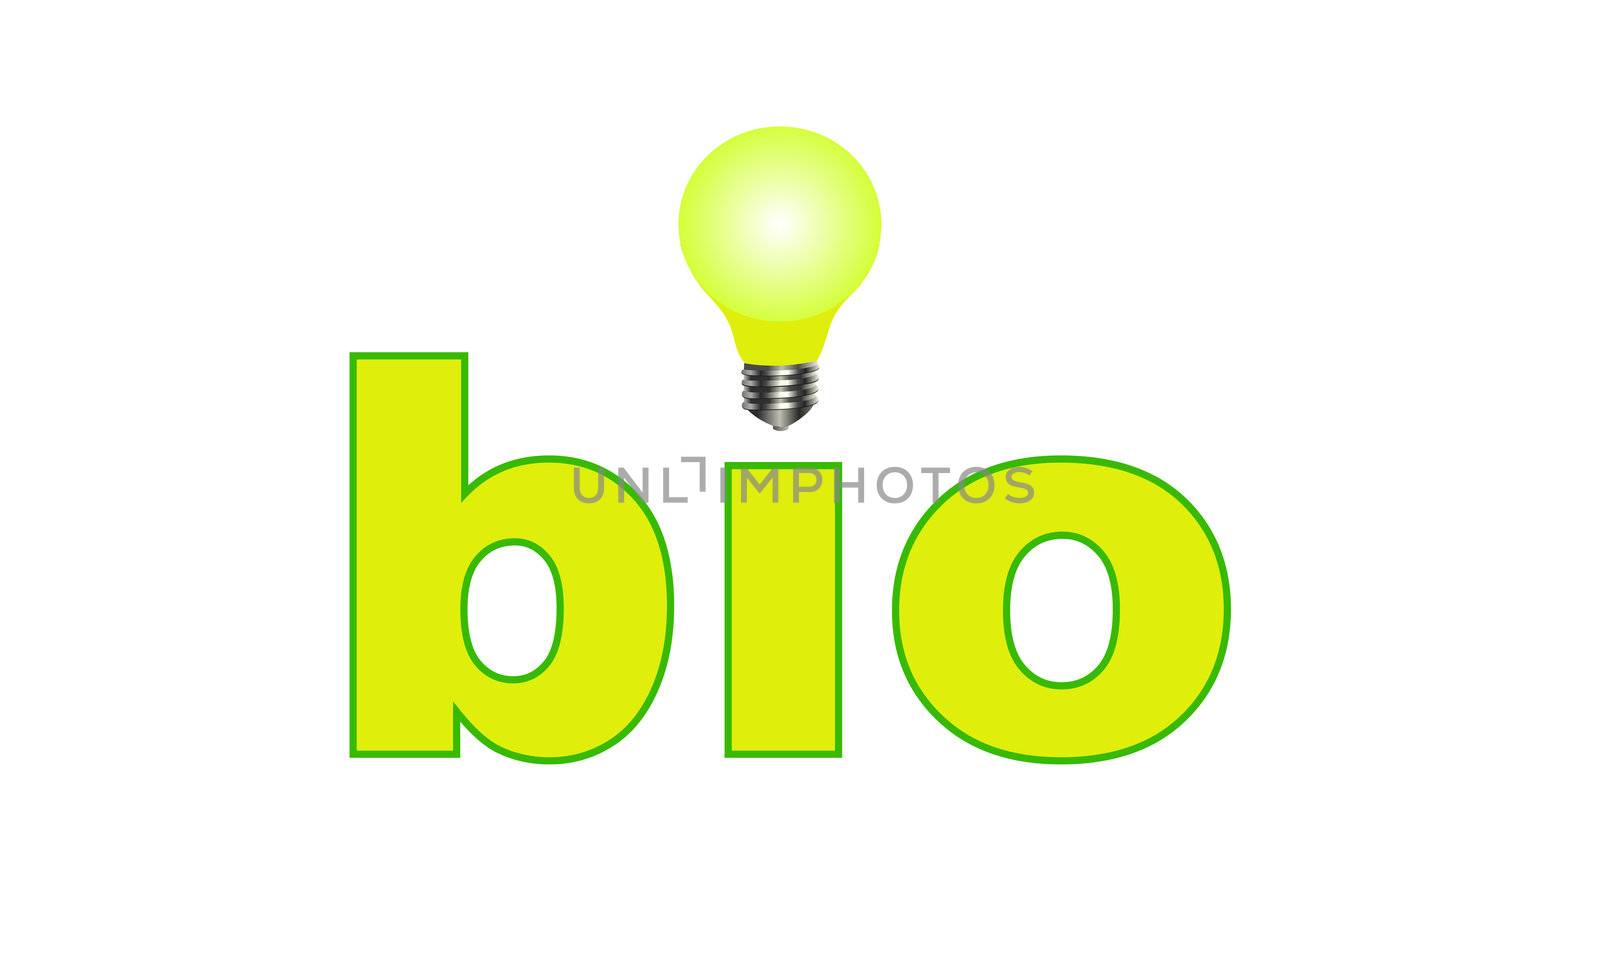 Bio eco friendly logo by shawlinmohd